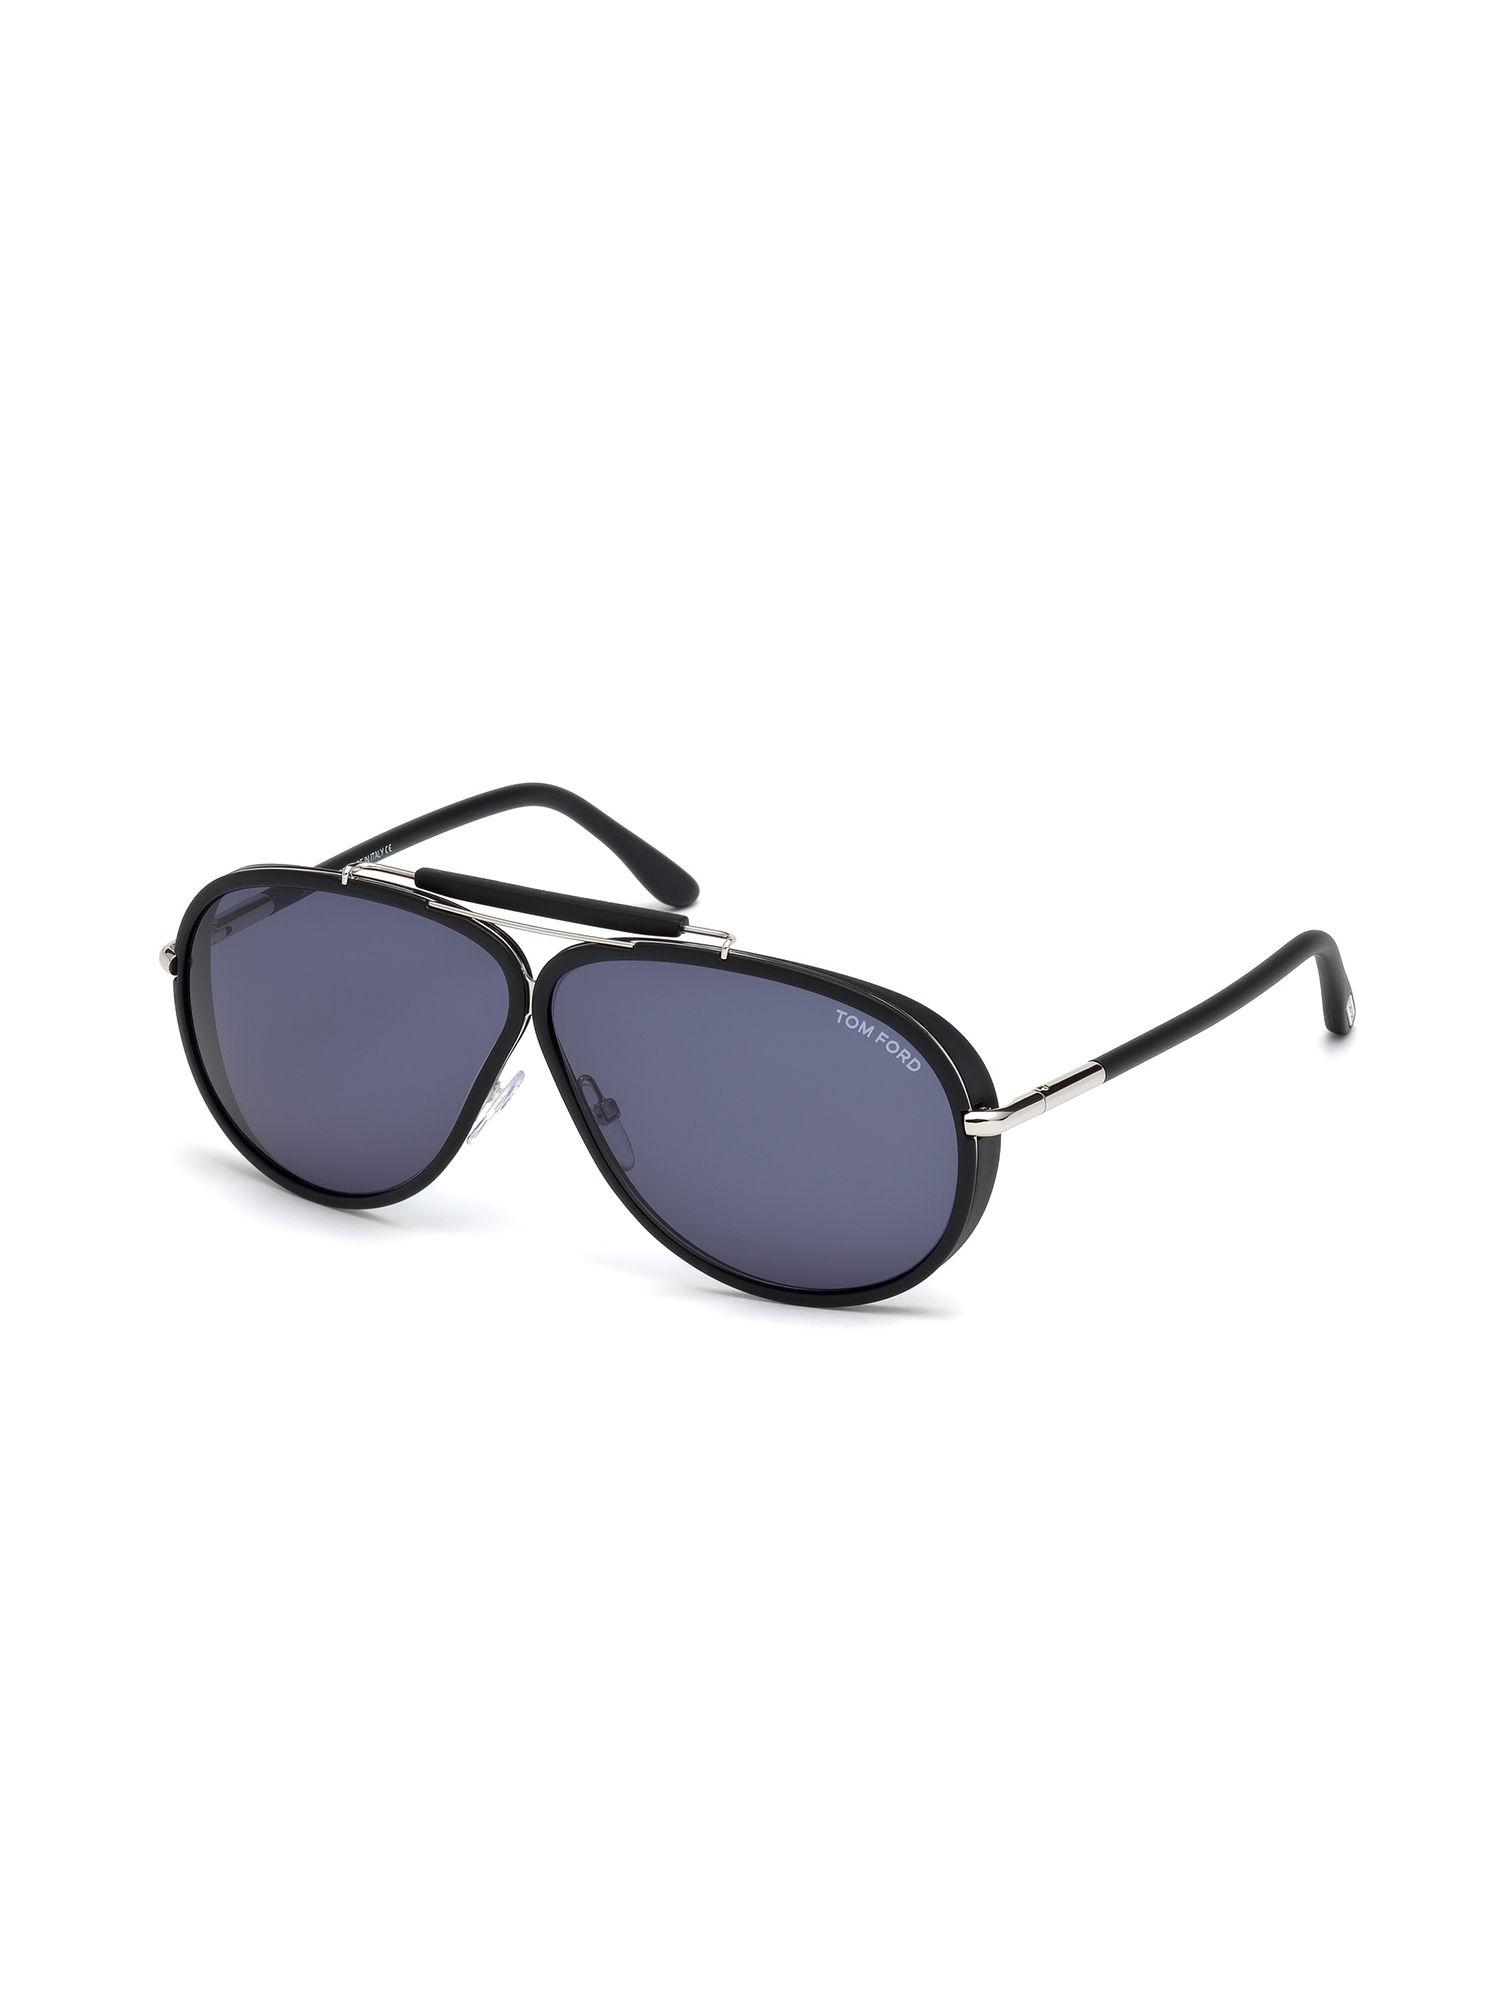 black-oversized-sunglasses---ft0509-65-02v